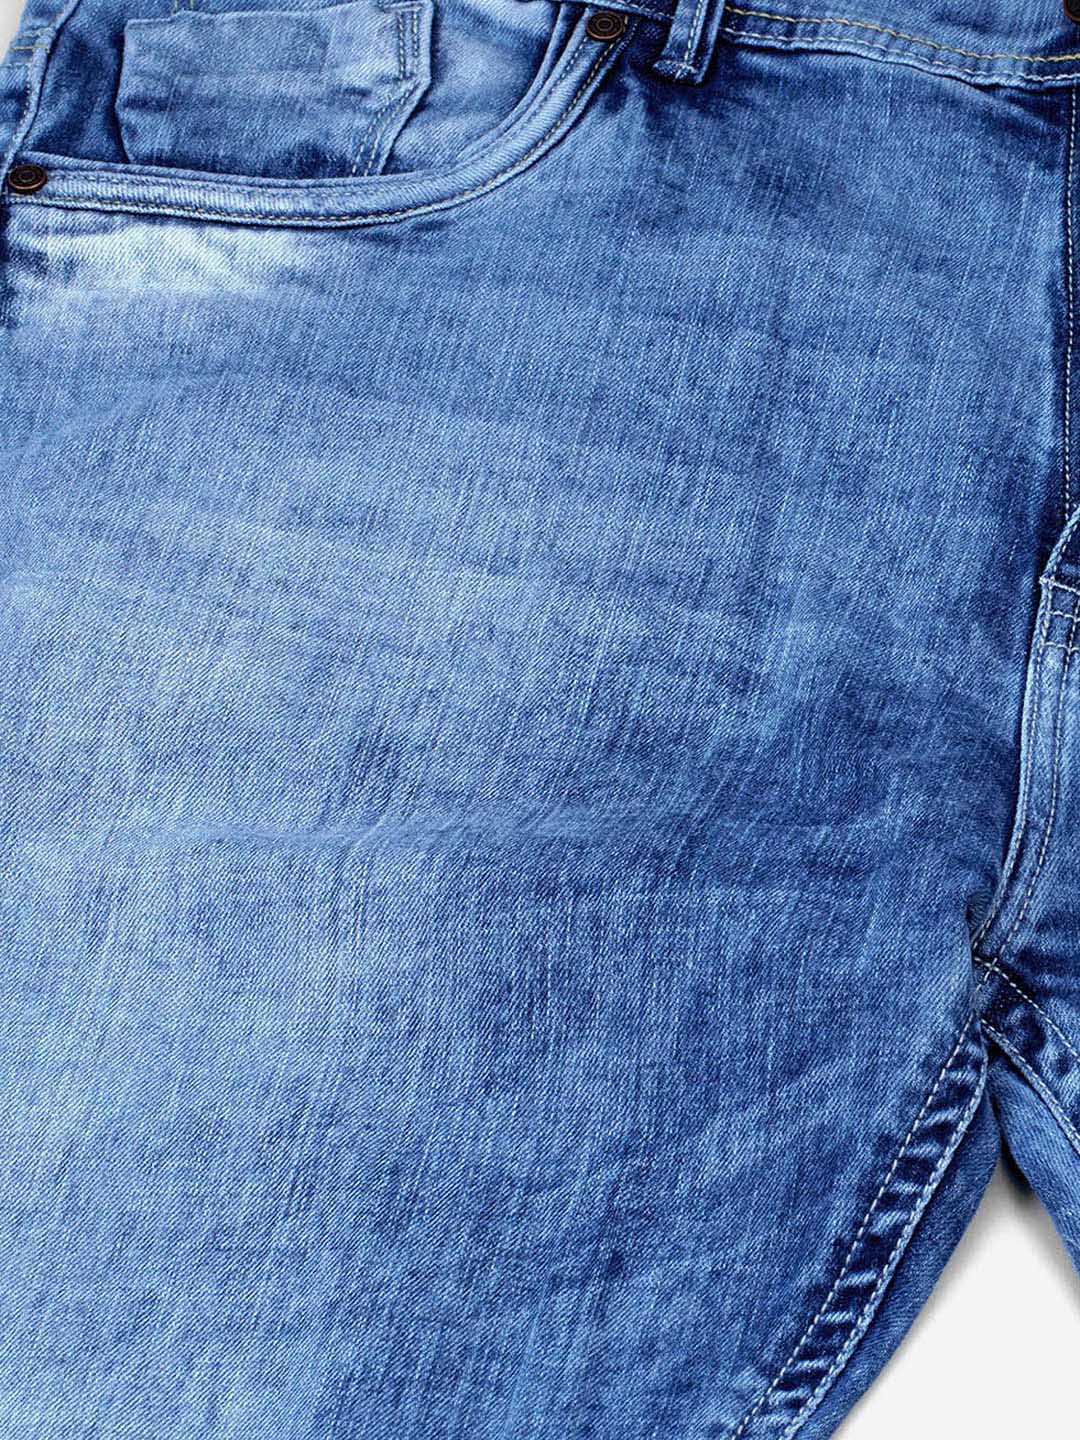 bottomwear/jeans/JPJ12128/jpj12128-2.jpg